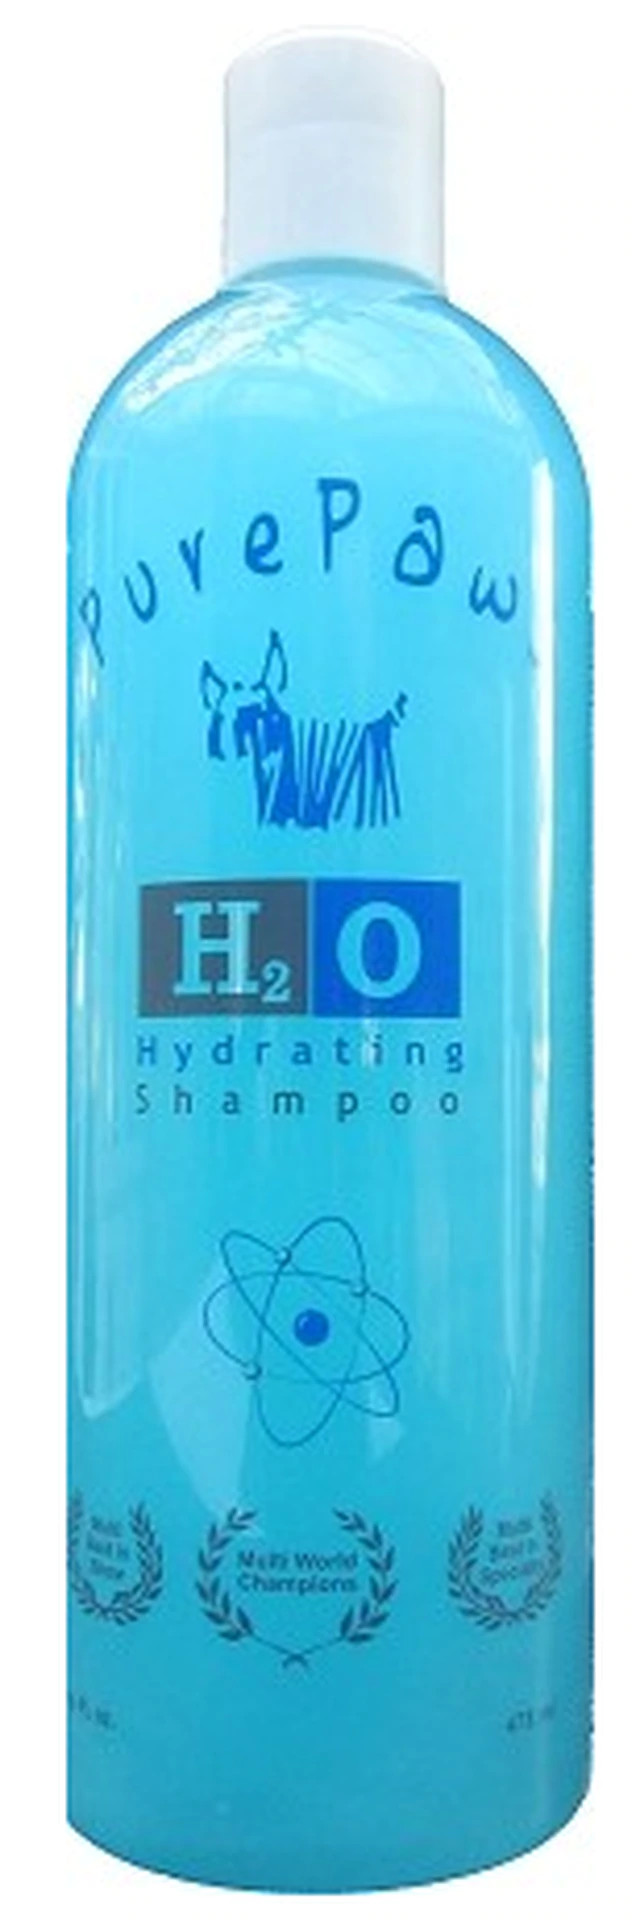 h20 hydrating shampoo